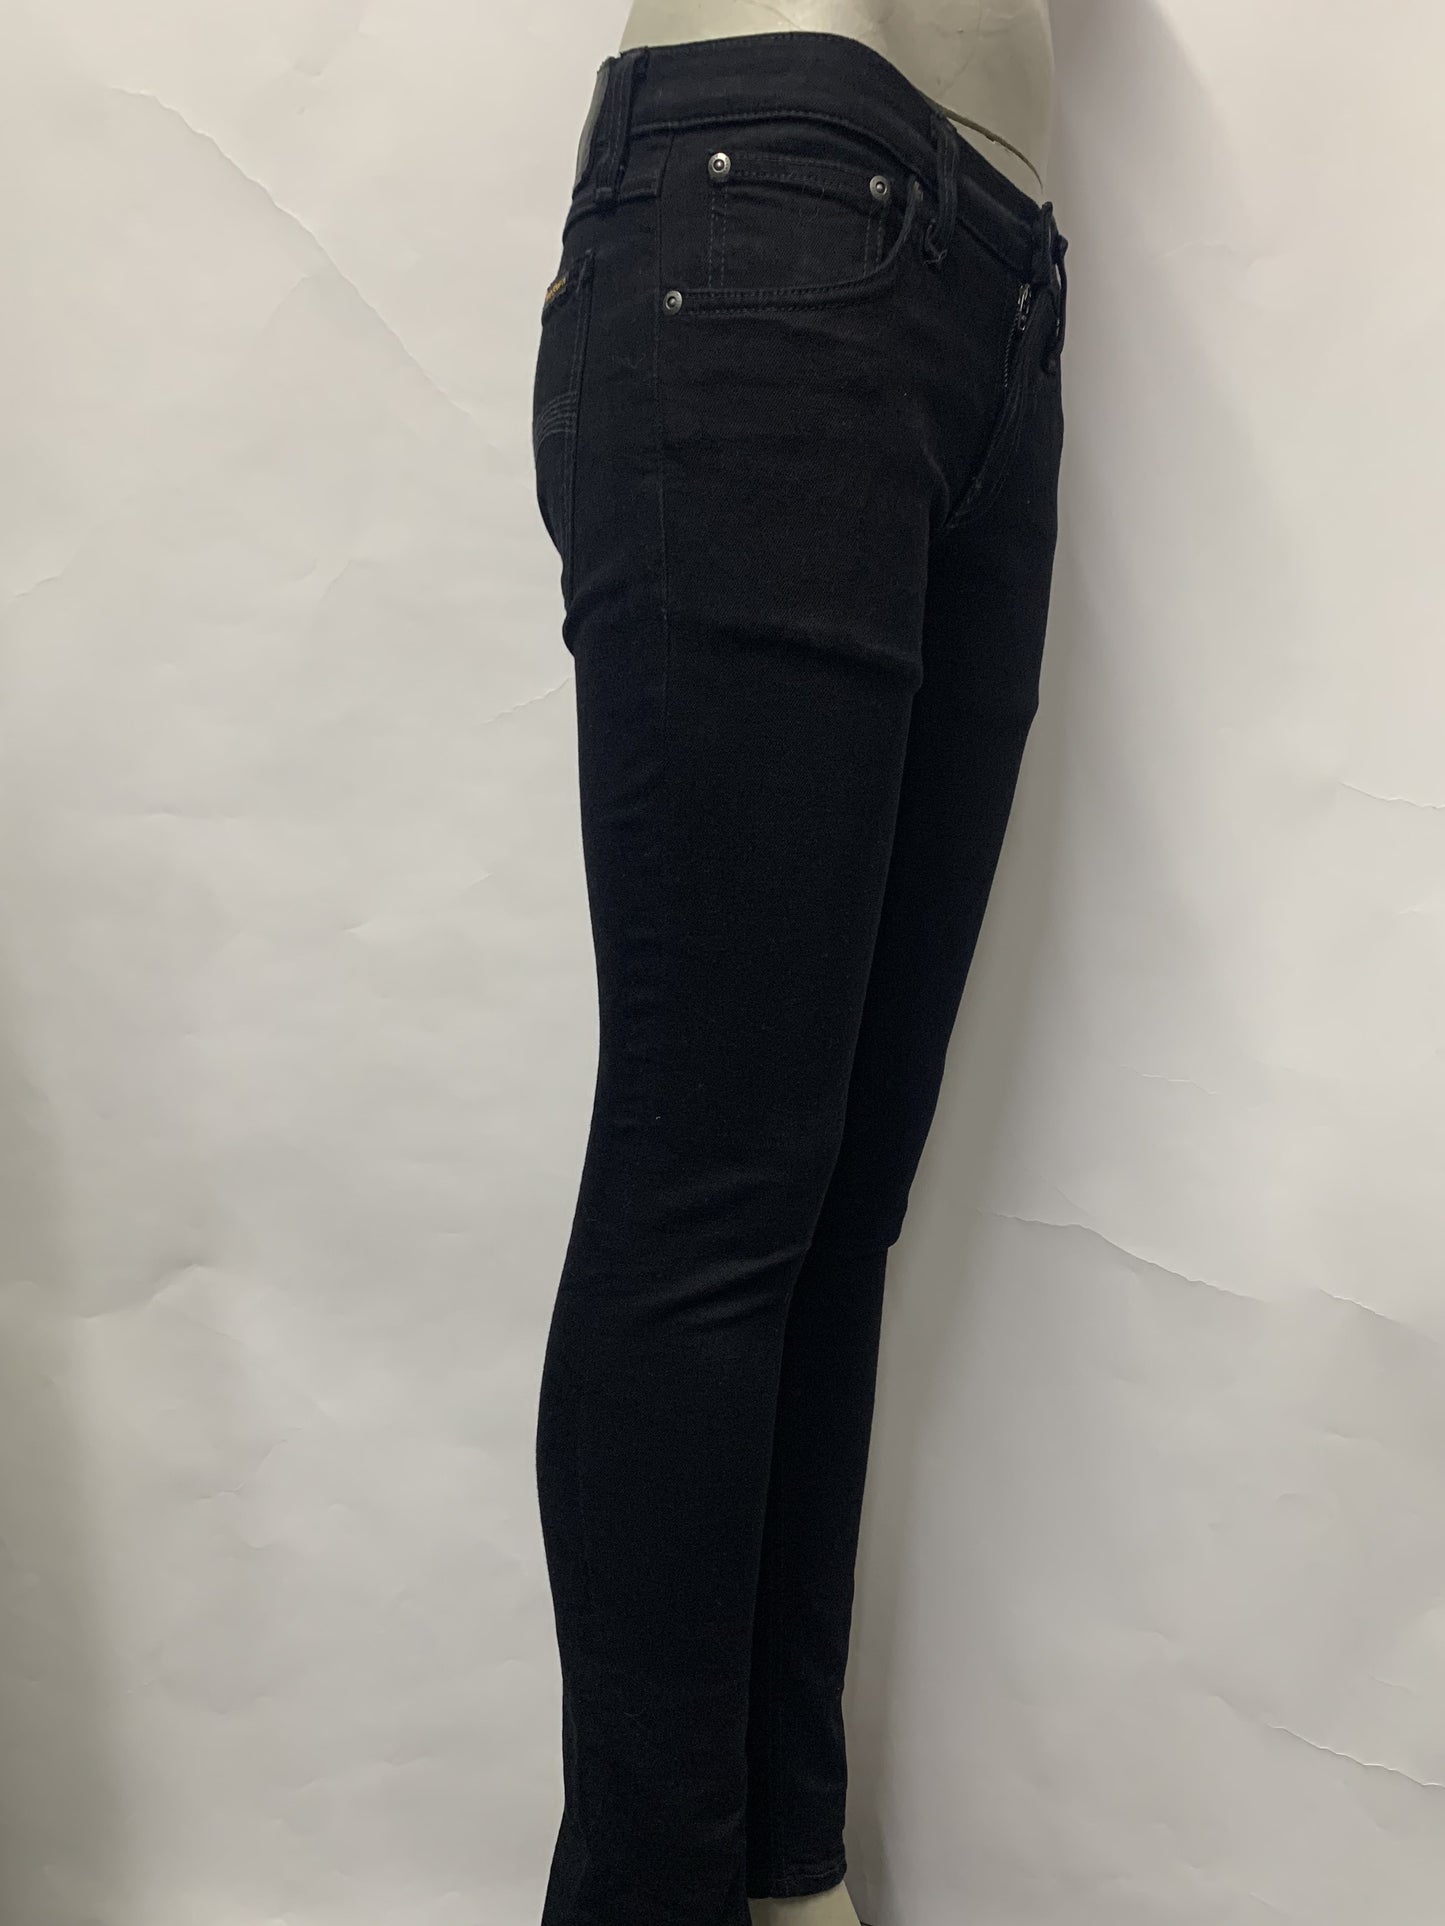 Nudie Jeans Black Skinny Jeans W28 L30